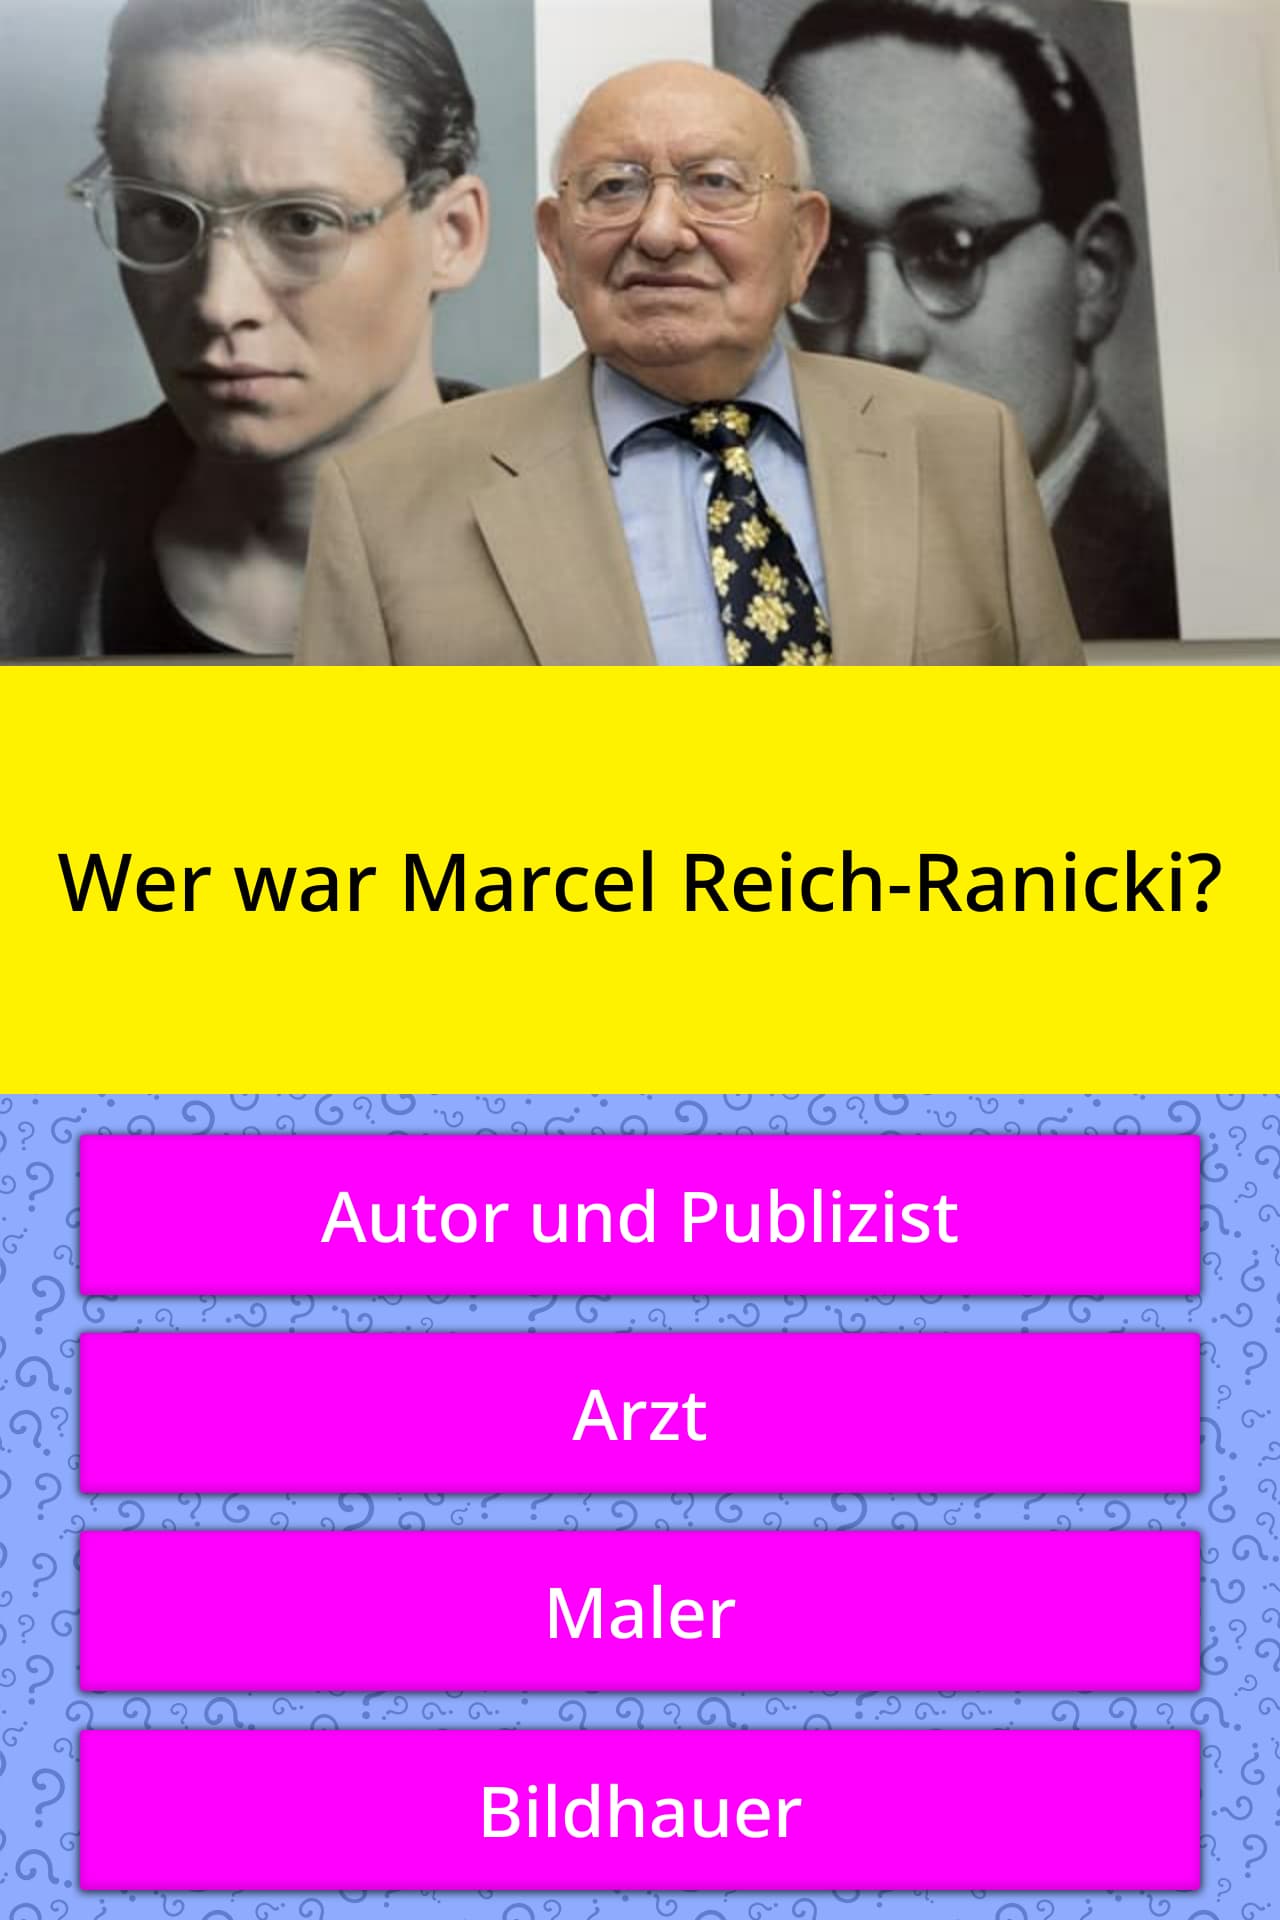 Wer war Marcel Reich-Ranicki? | Quizfragen | QuizzClub